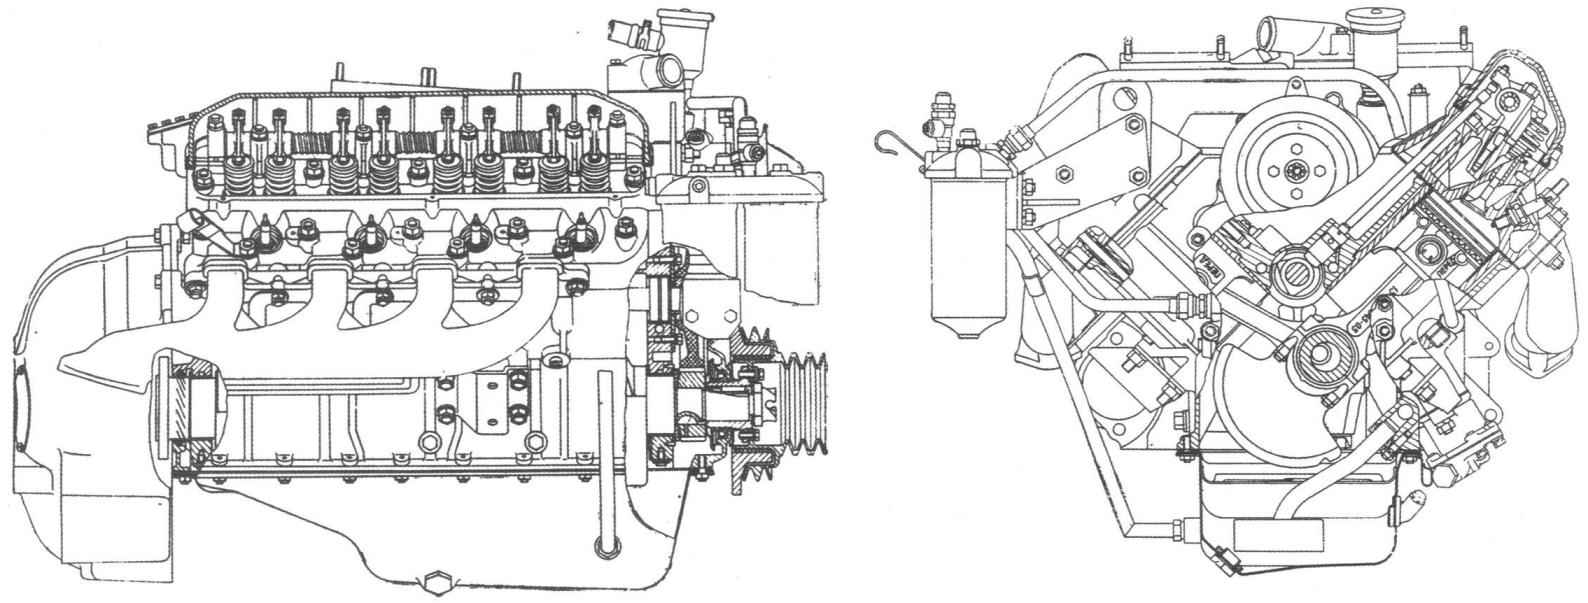 Восьмицилиндровый V-образный двигатель ЗМЗ-14 (ГАЗ-14)